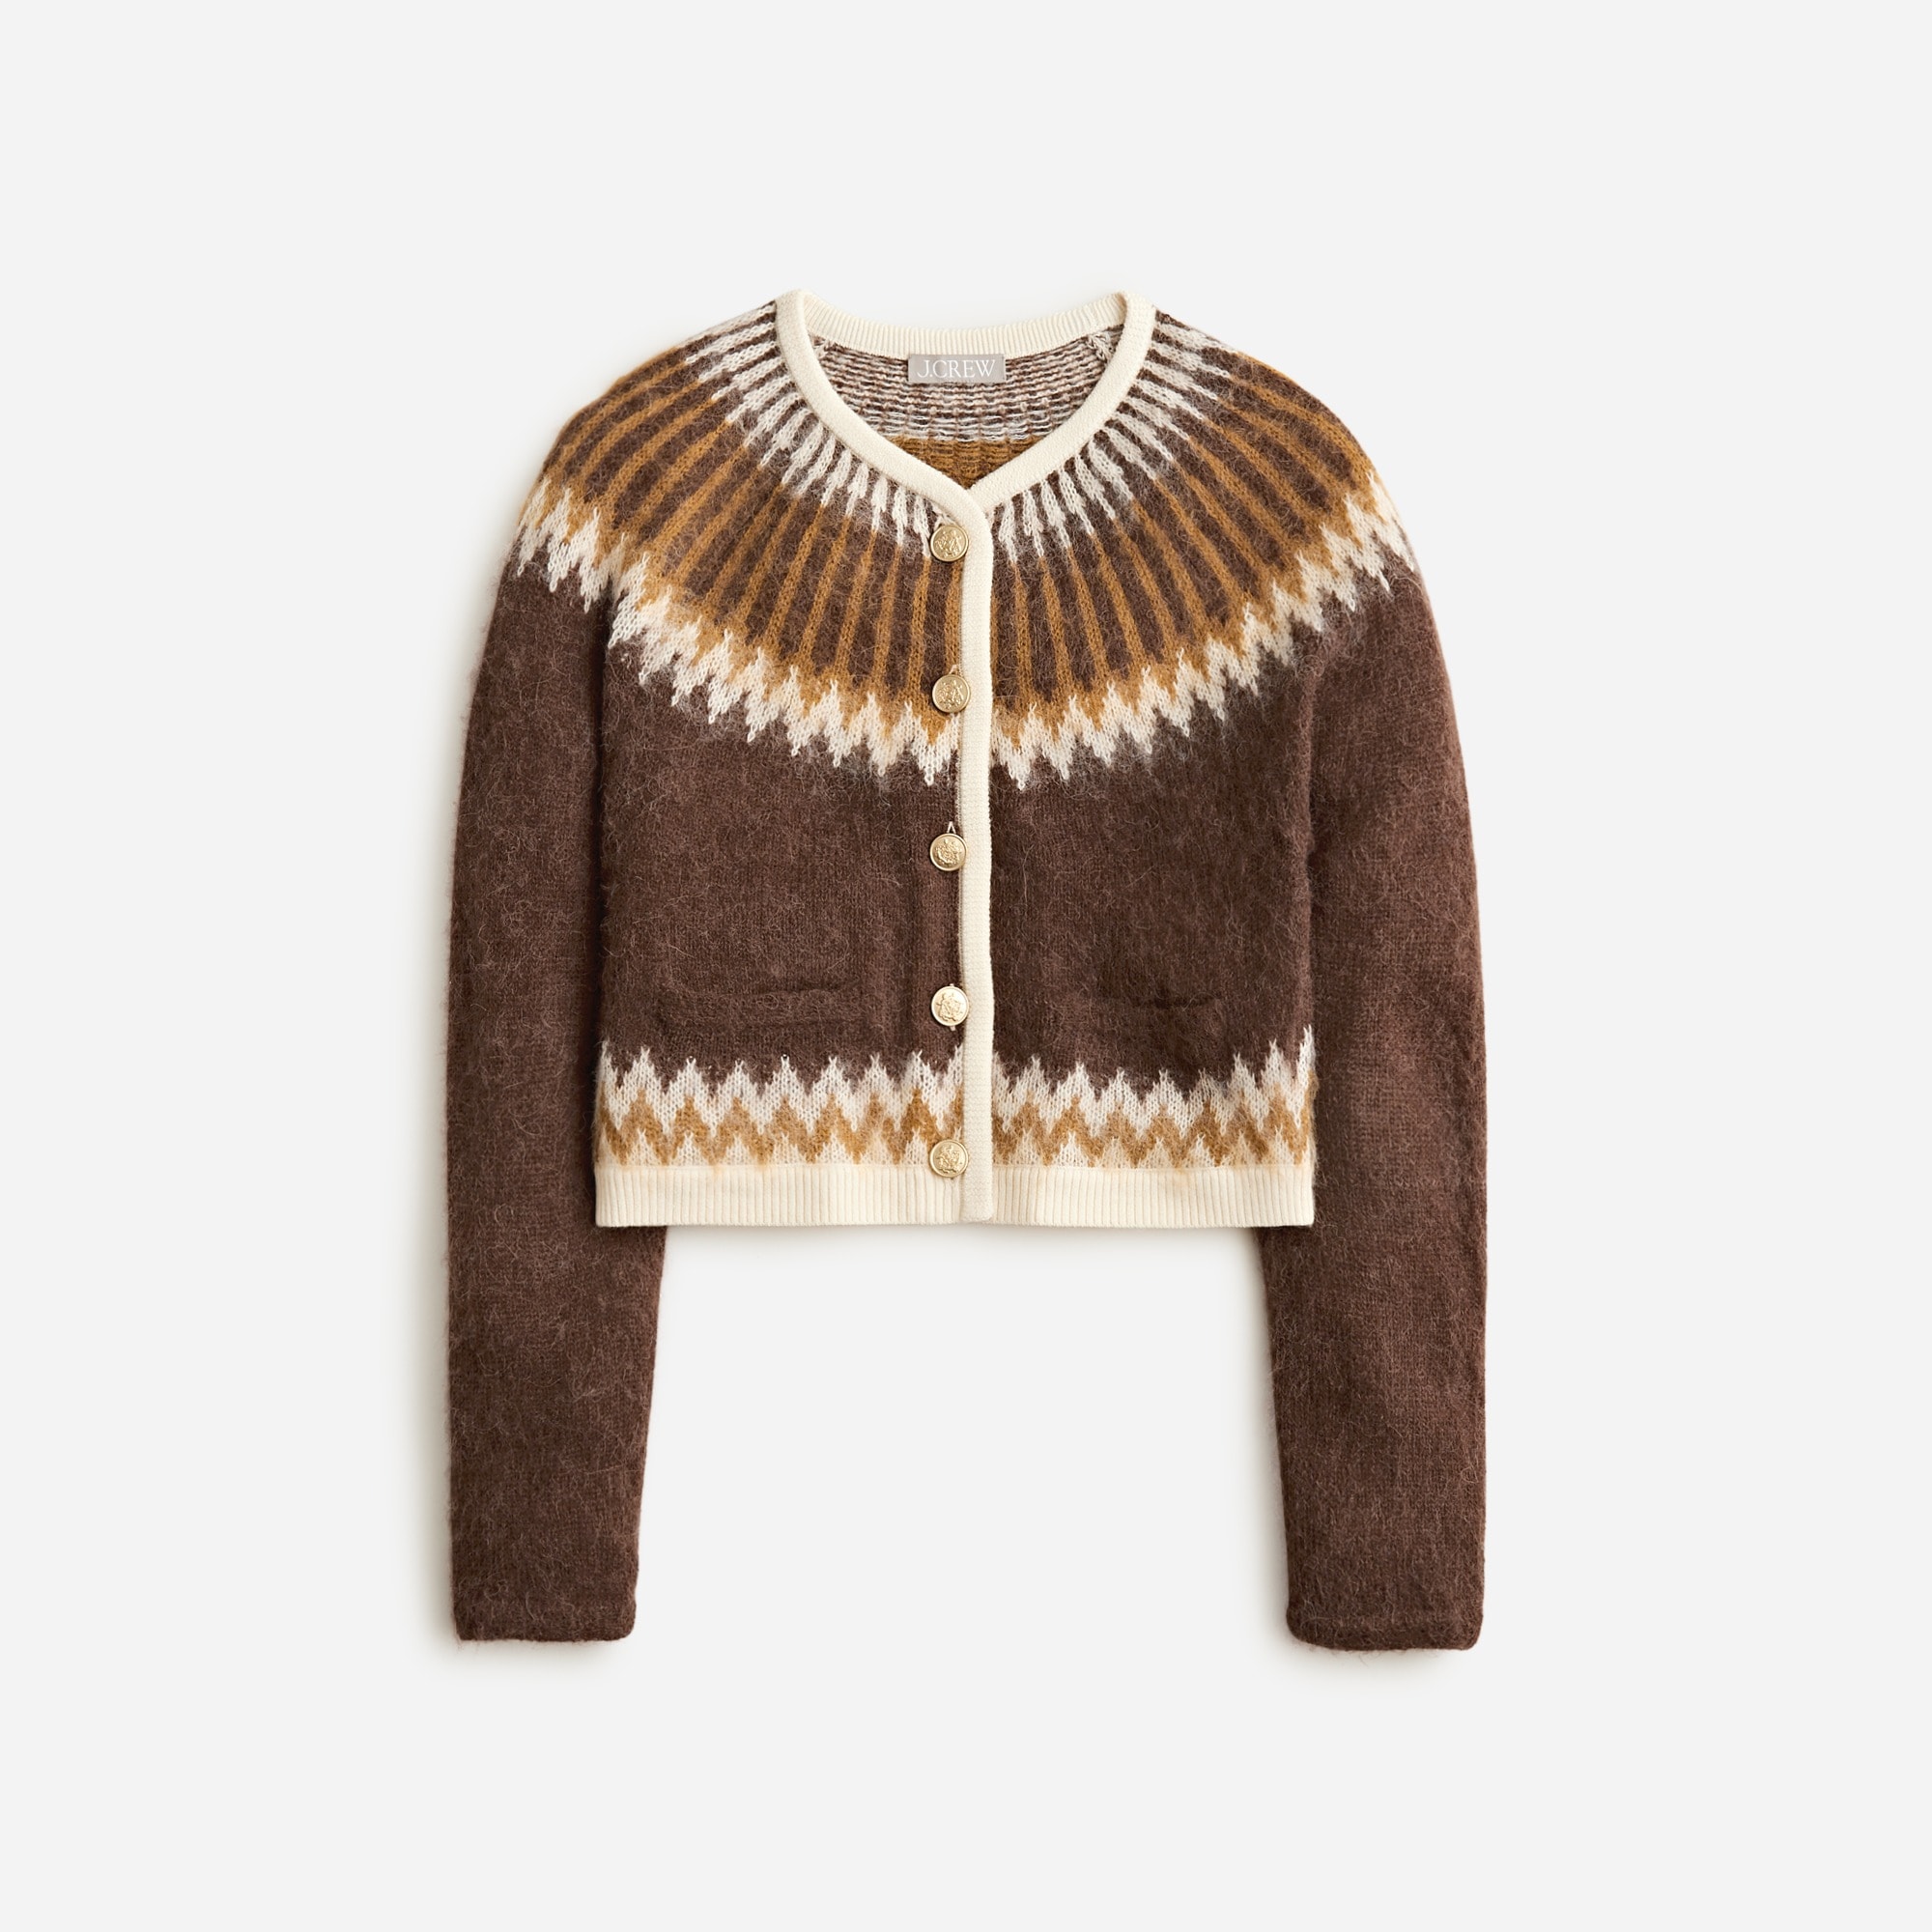  Fair Isle cardigan sweater in brushed yarn